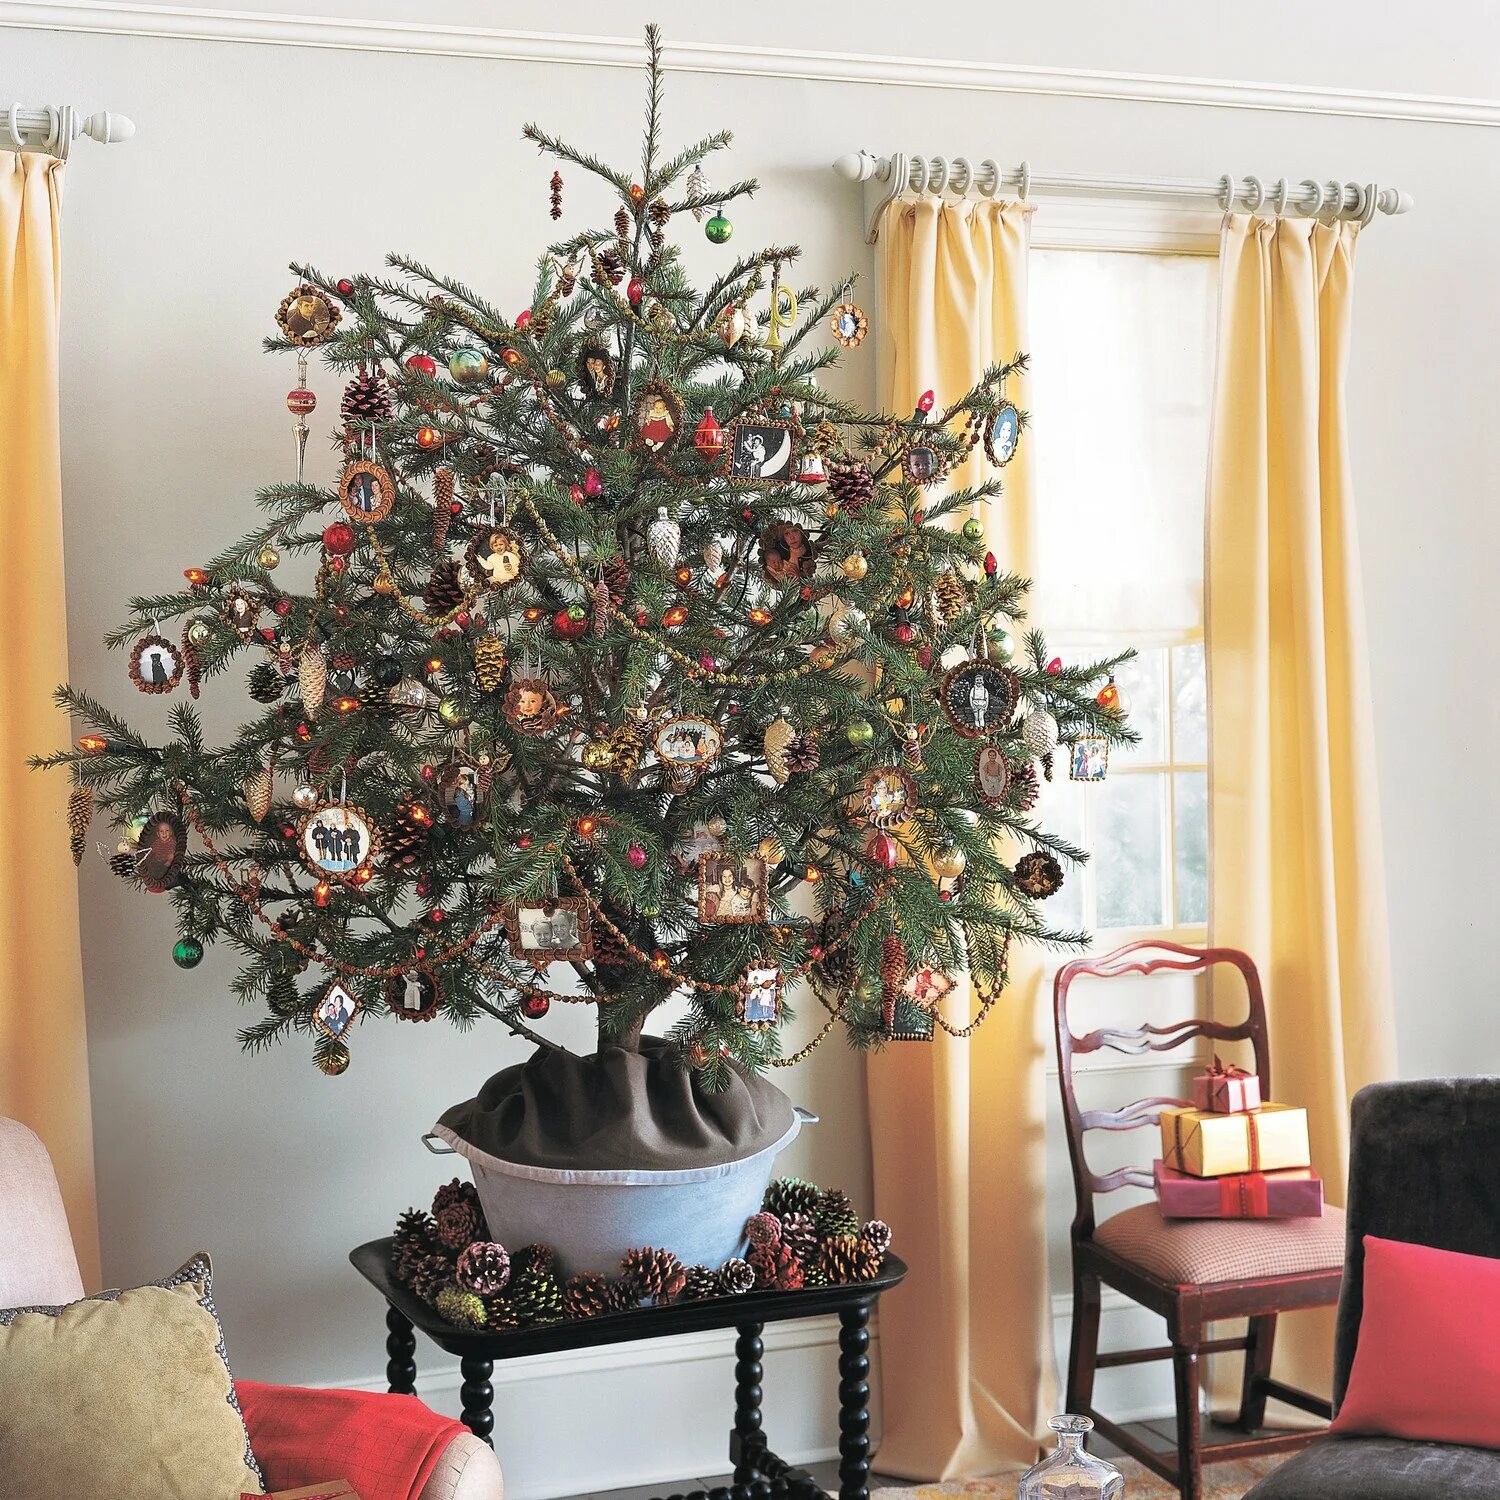 Декор под елку. Елка в квартире. Новогодняя елка в квартире. Новогодний интерьер дерево. Натуральная елка украшенная.